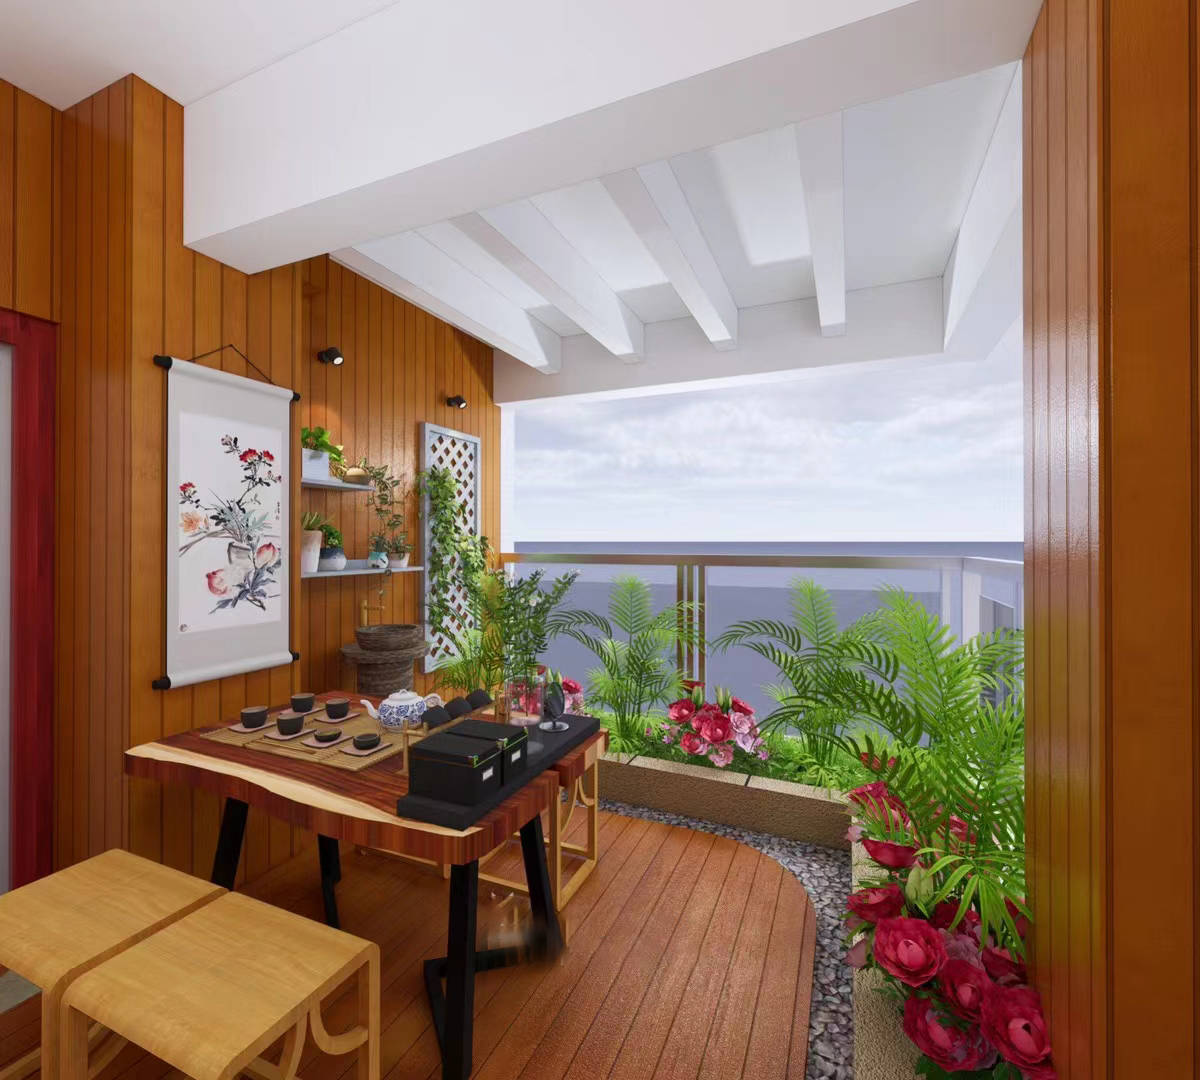 广州喜鹊林木阳台以中式风格茶室改造方案讲述